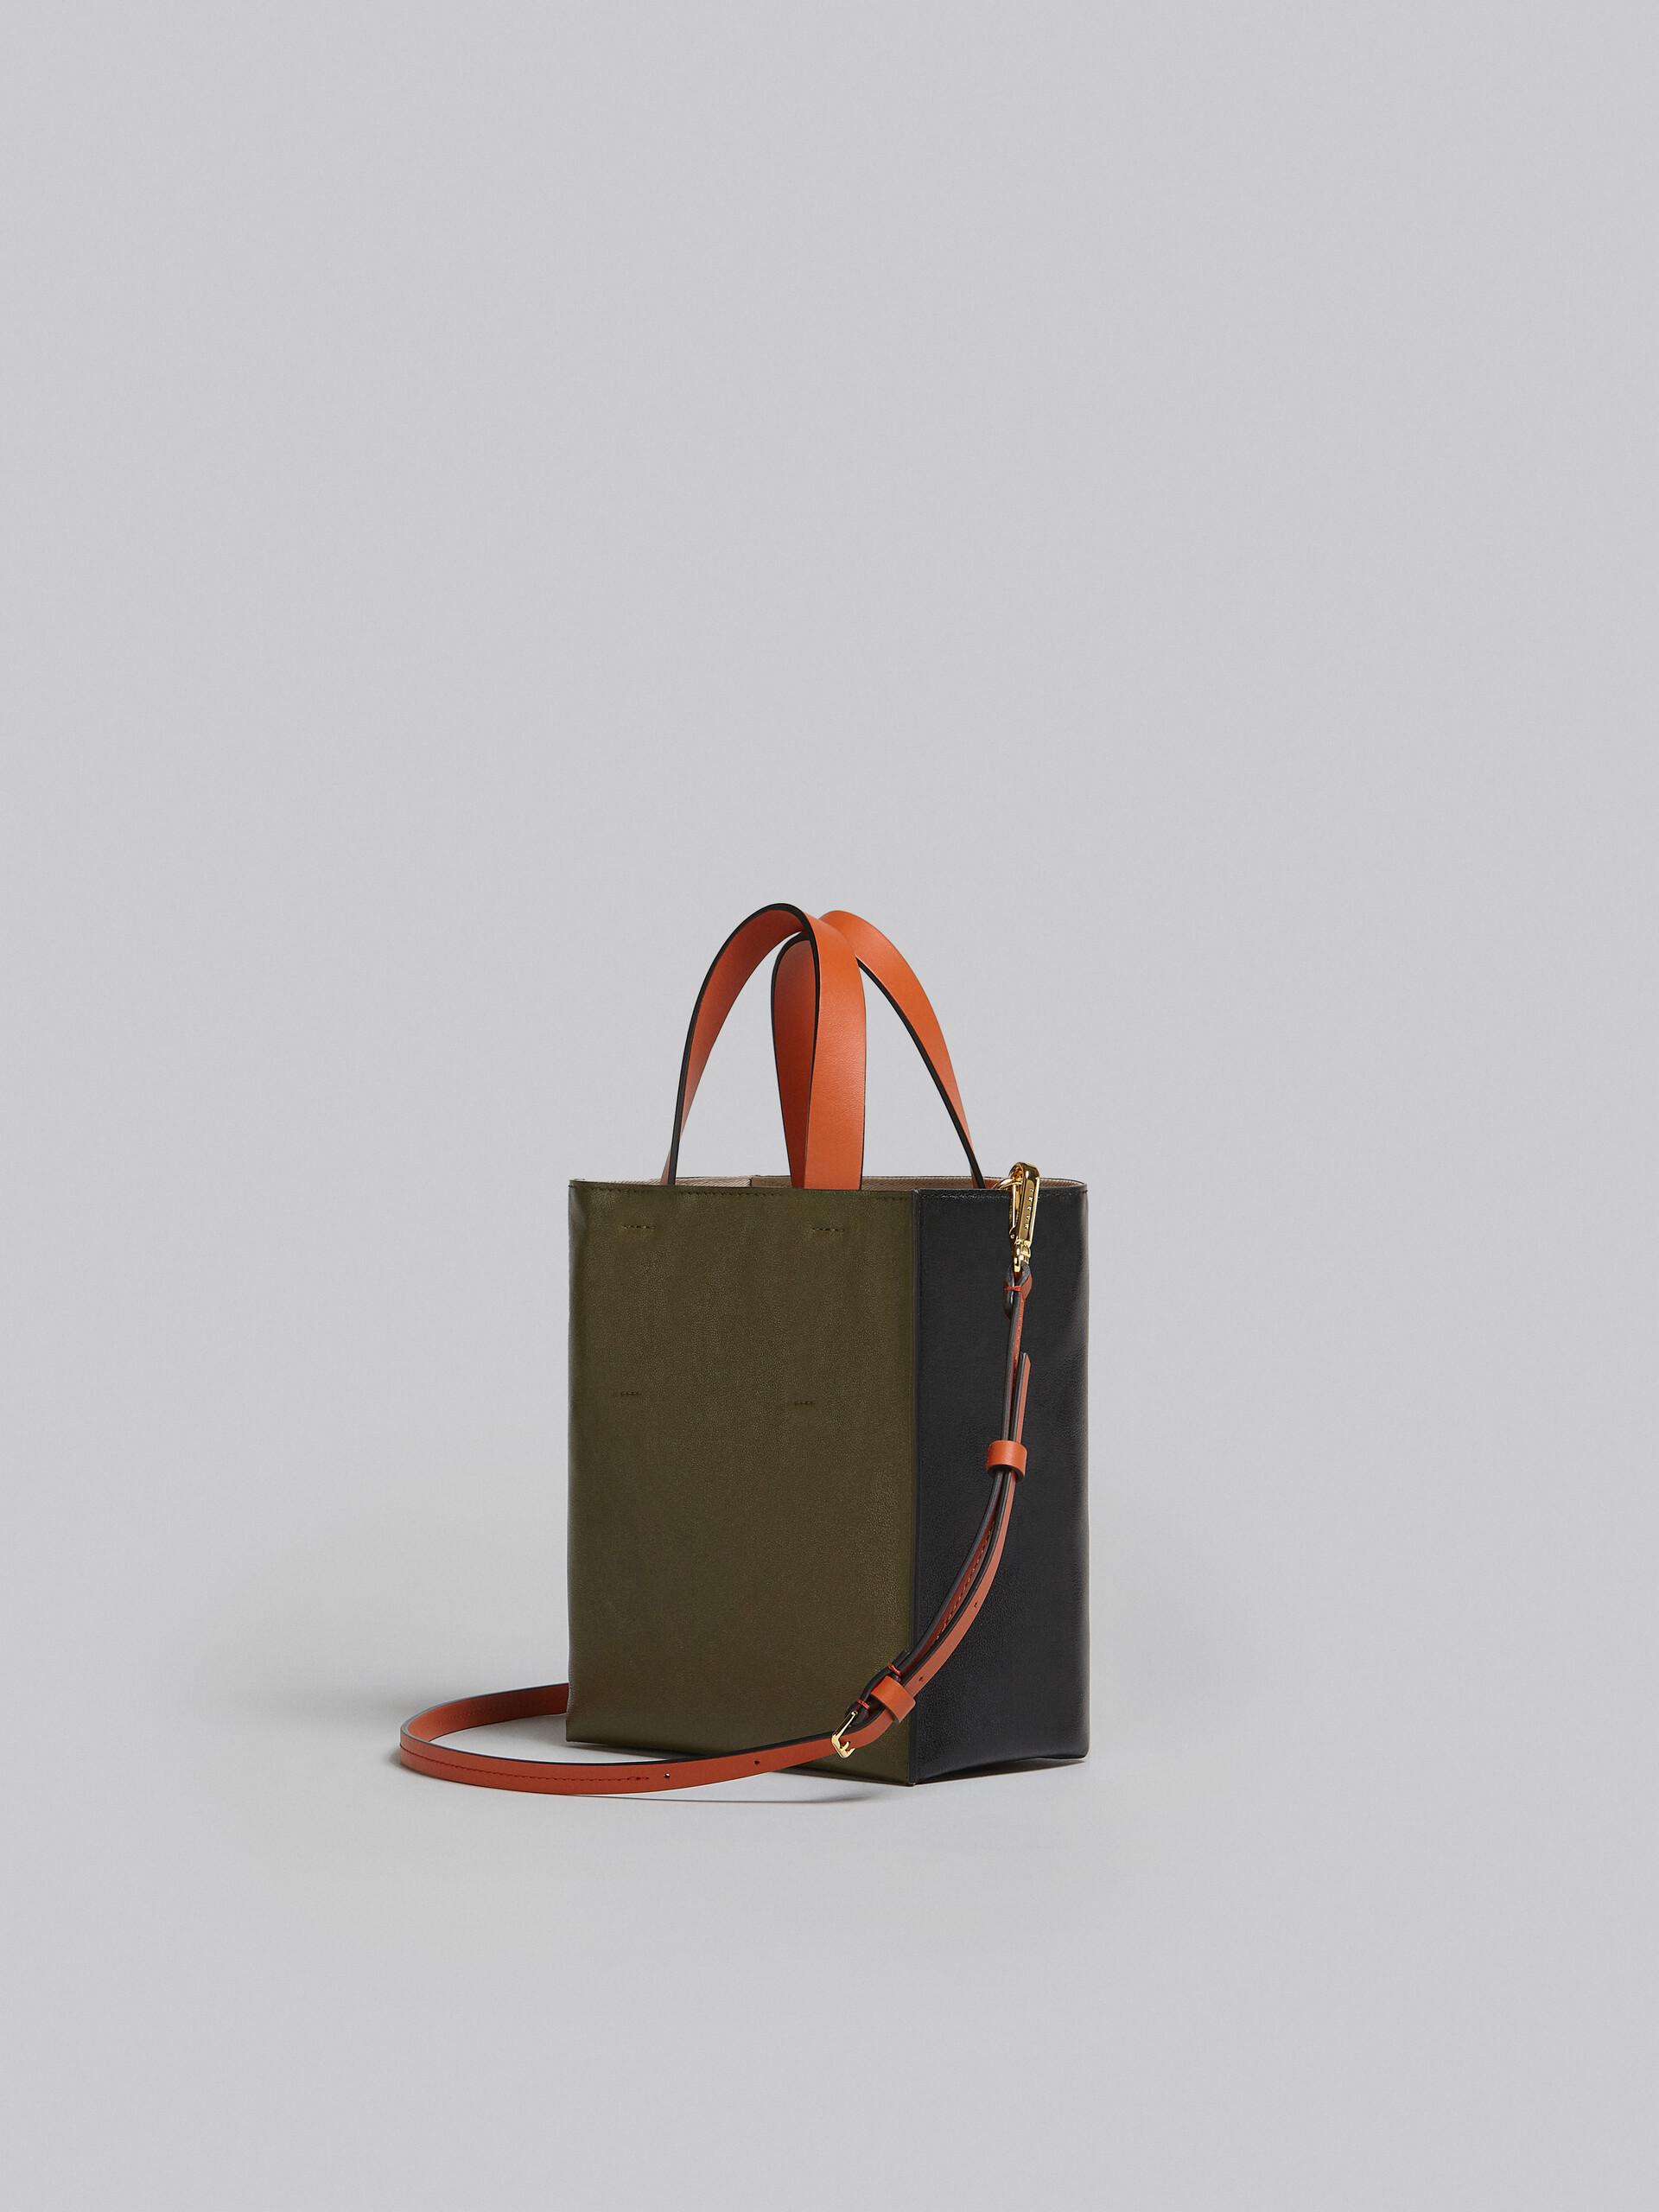 Mini-sac Museo Soft en cuir gris, noir et rouge - Sacs cabas - Image 3